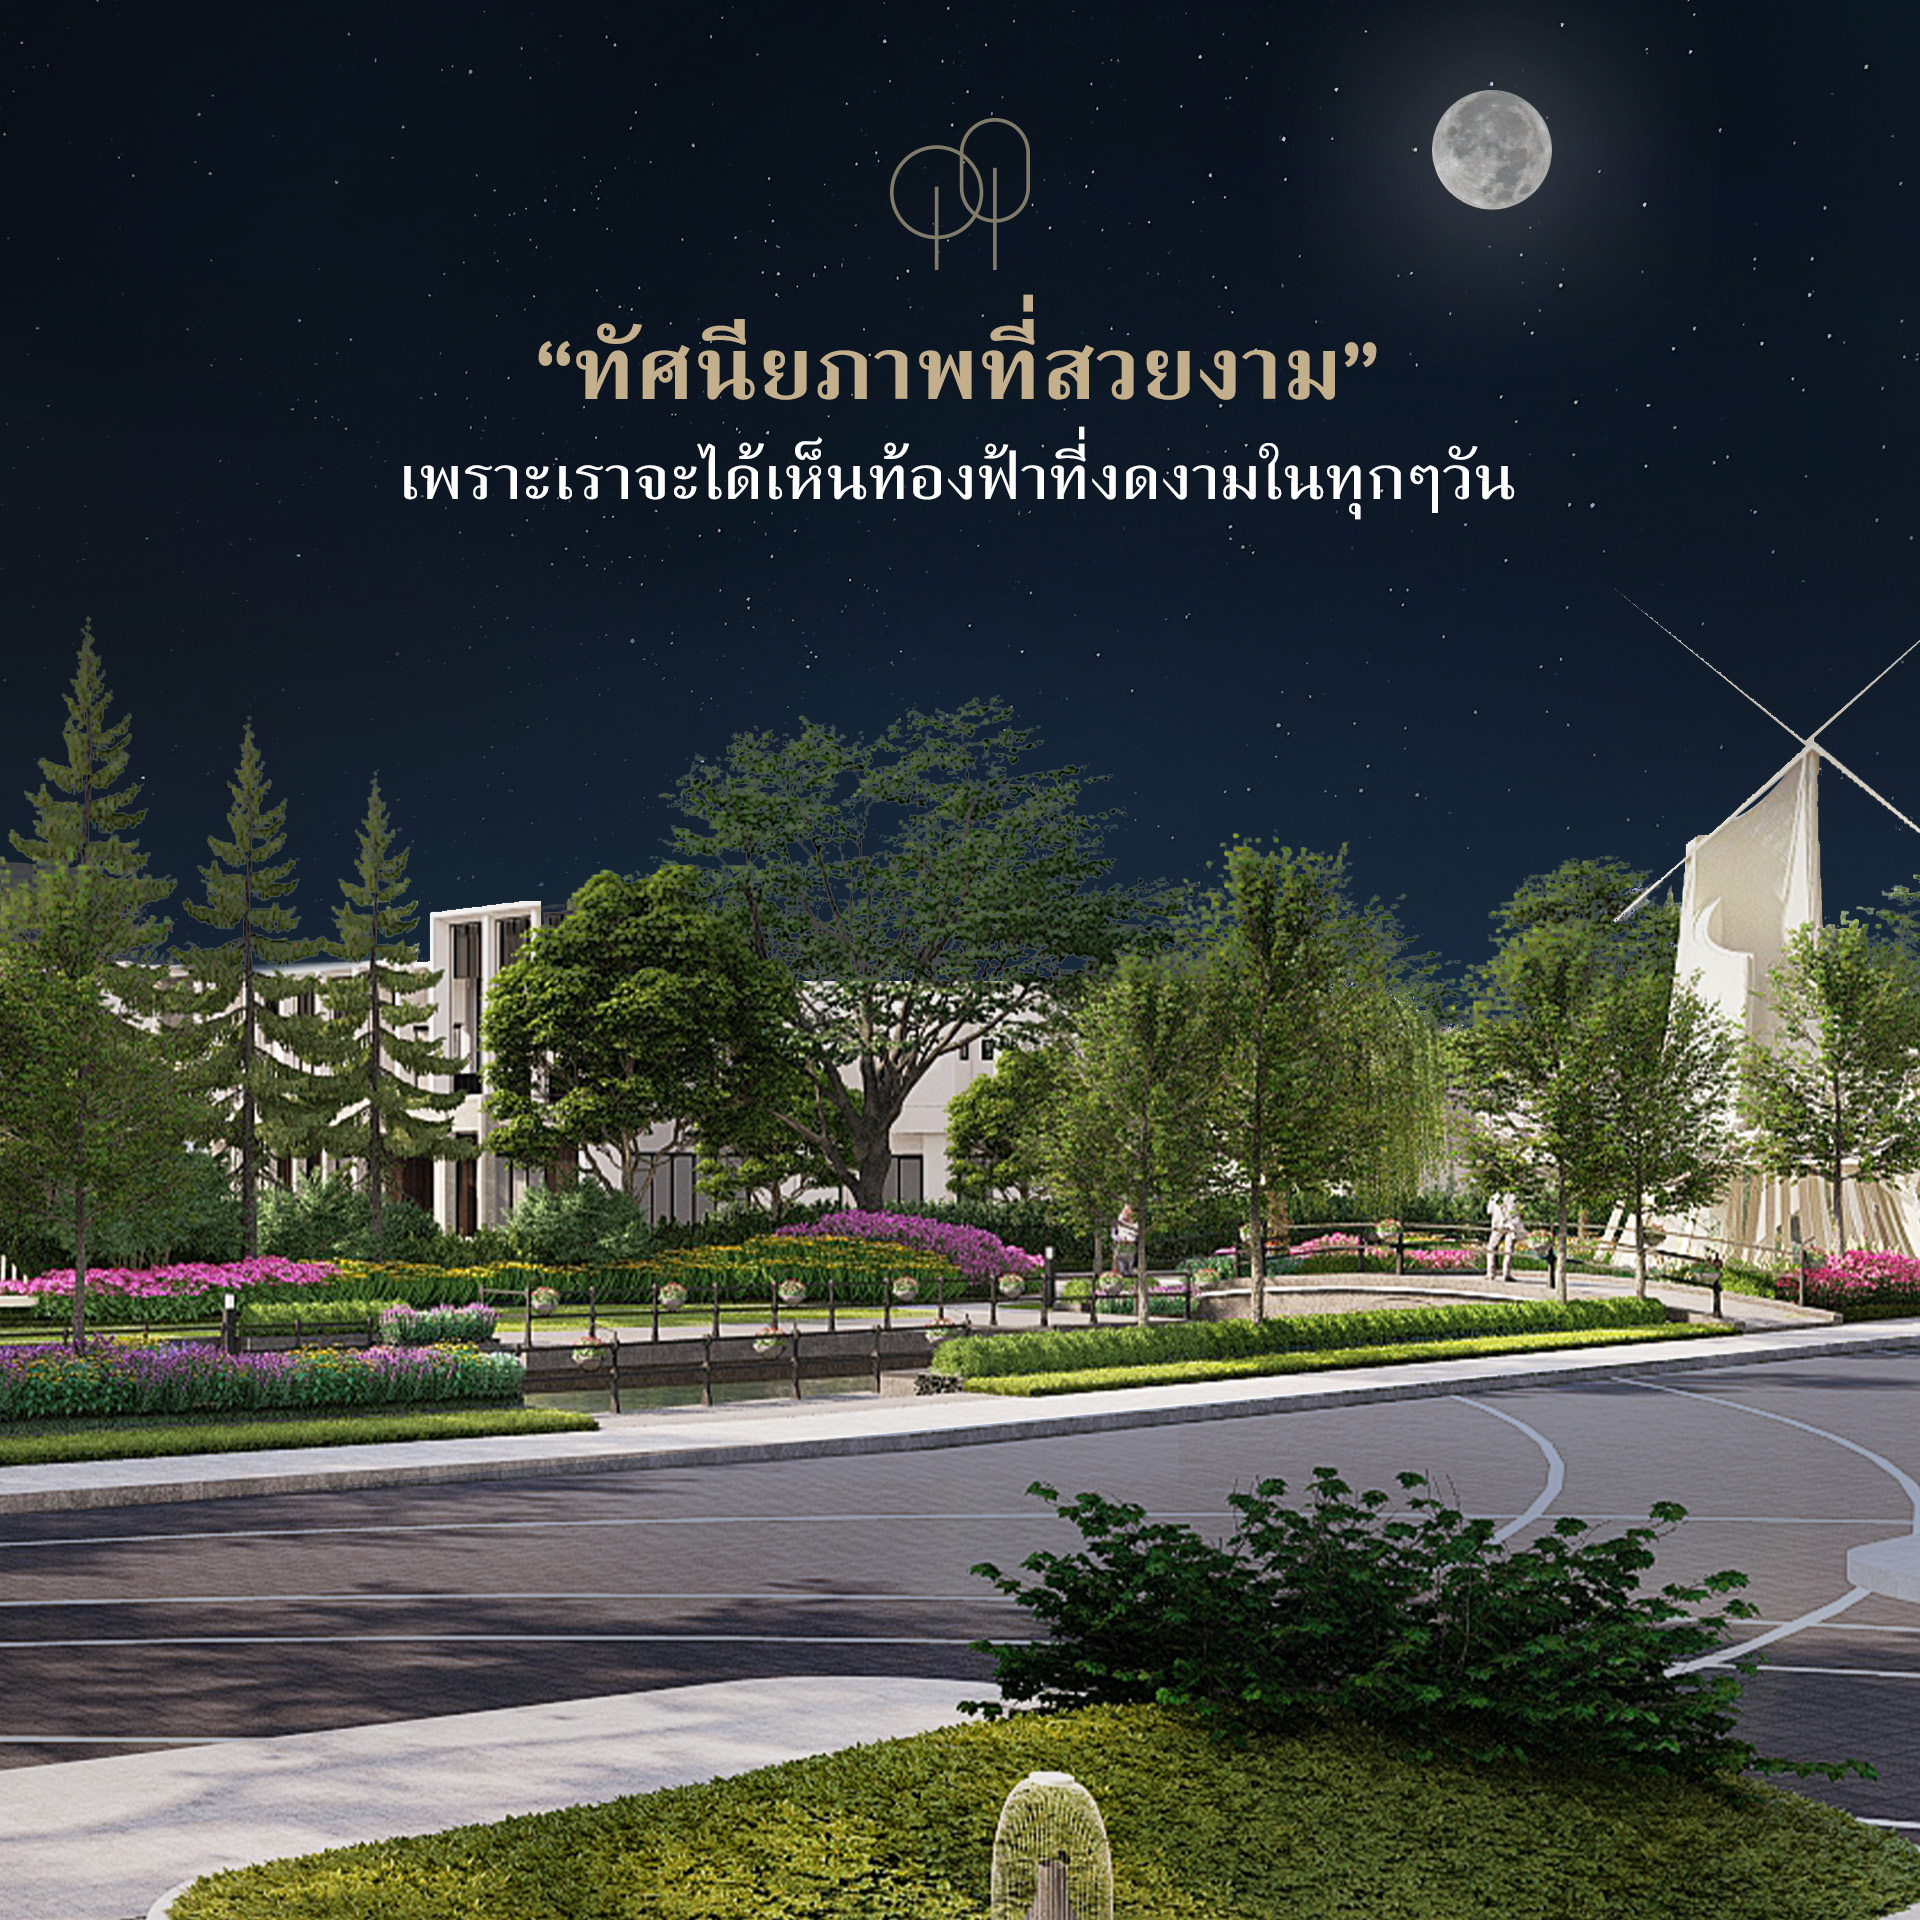 พรีวิว บางกอก บูเลอวาร์ด ซิกเนเจอร์ บางแค (bangkok Boulevard Signature Bangkhae) บ้านหรู ซีรีส์ใหม่ 516 ตร.ม. รองรับ 4 จอดรถ